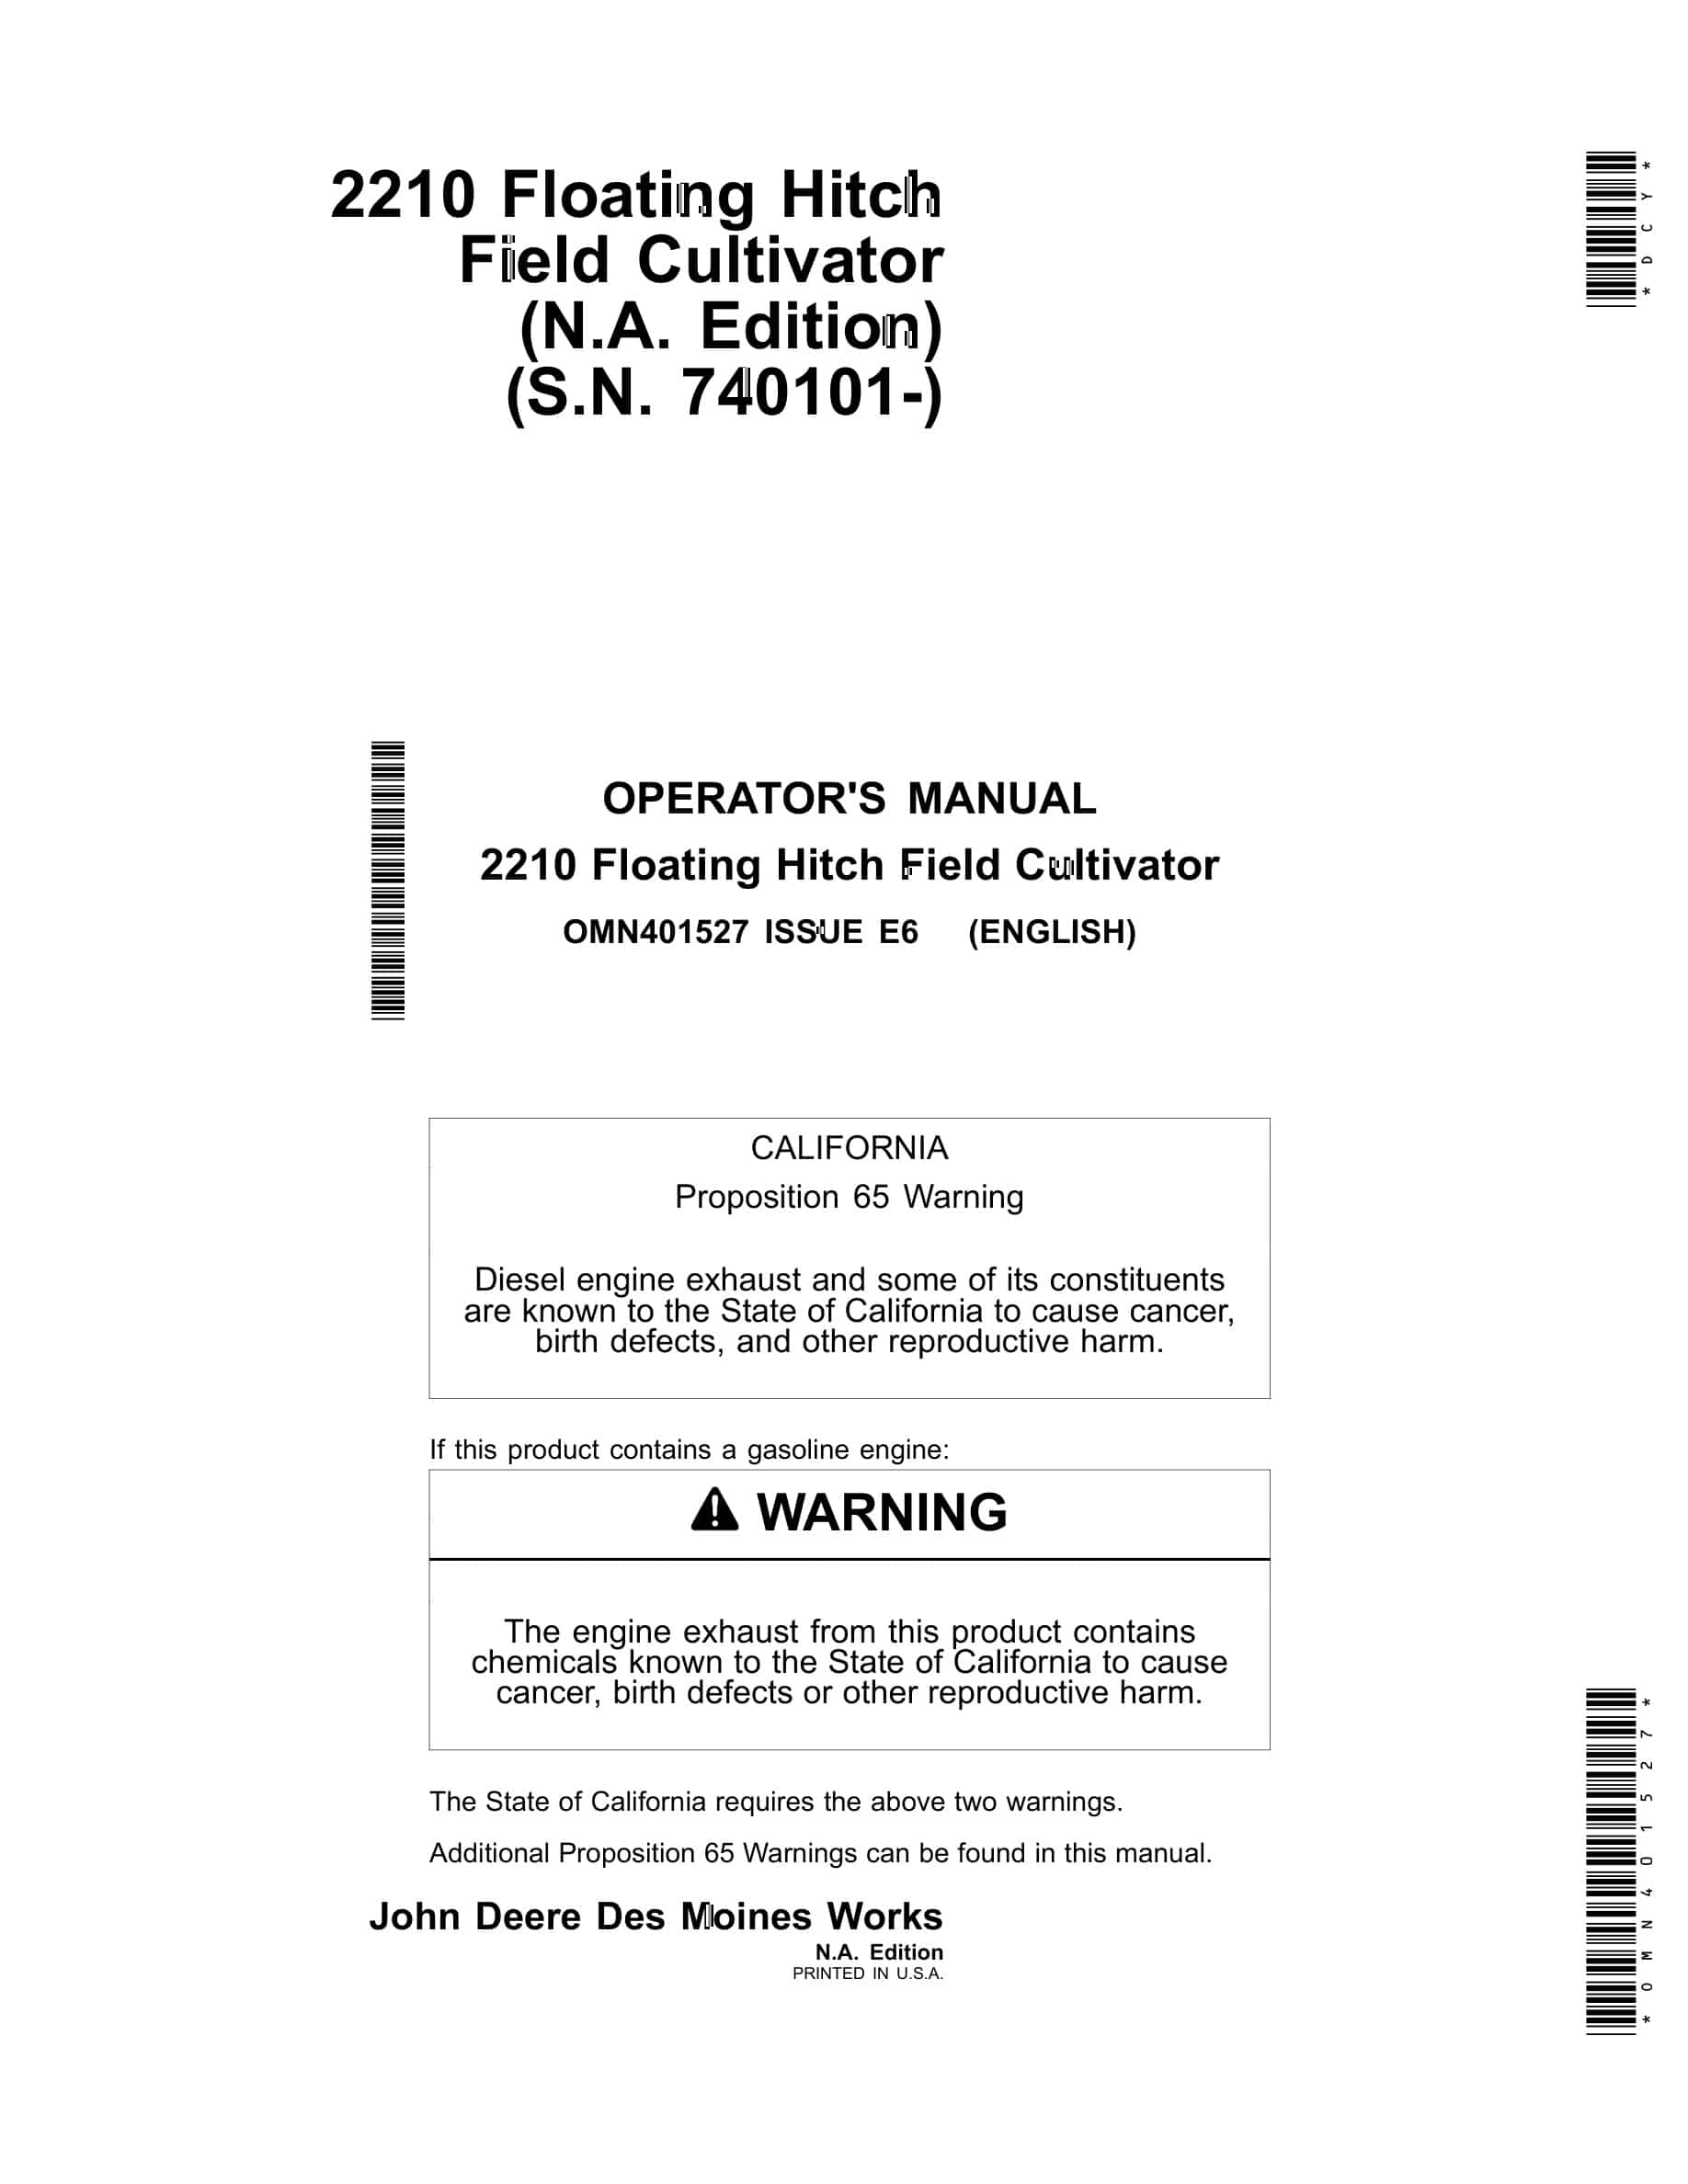 John Deere 2210 Floating Hitch Field Cultivator Operator Manual OMN401527-1